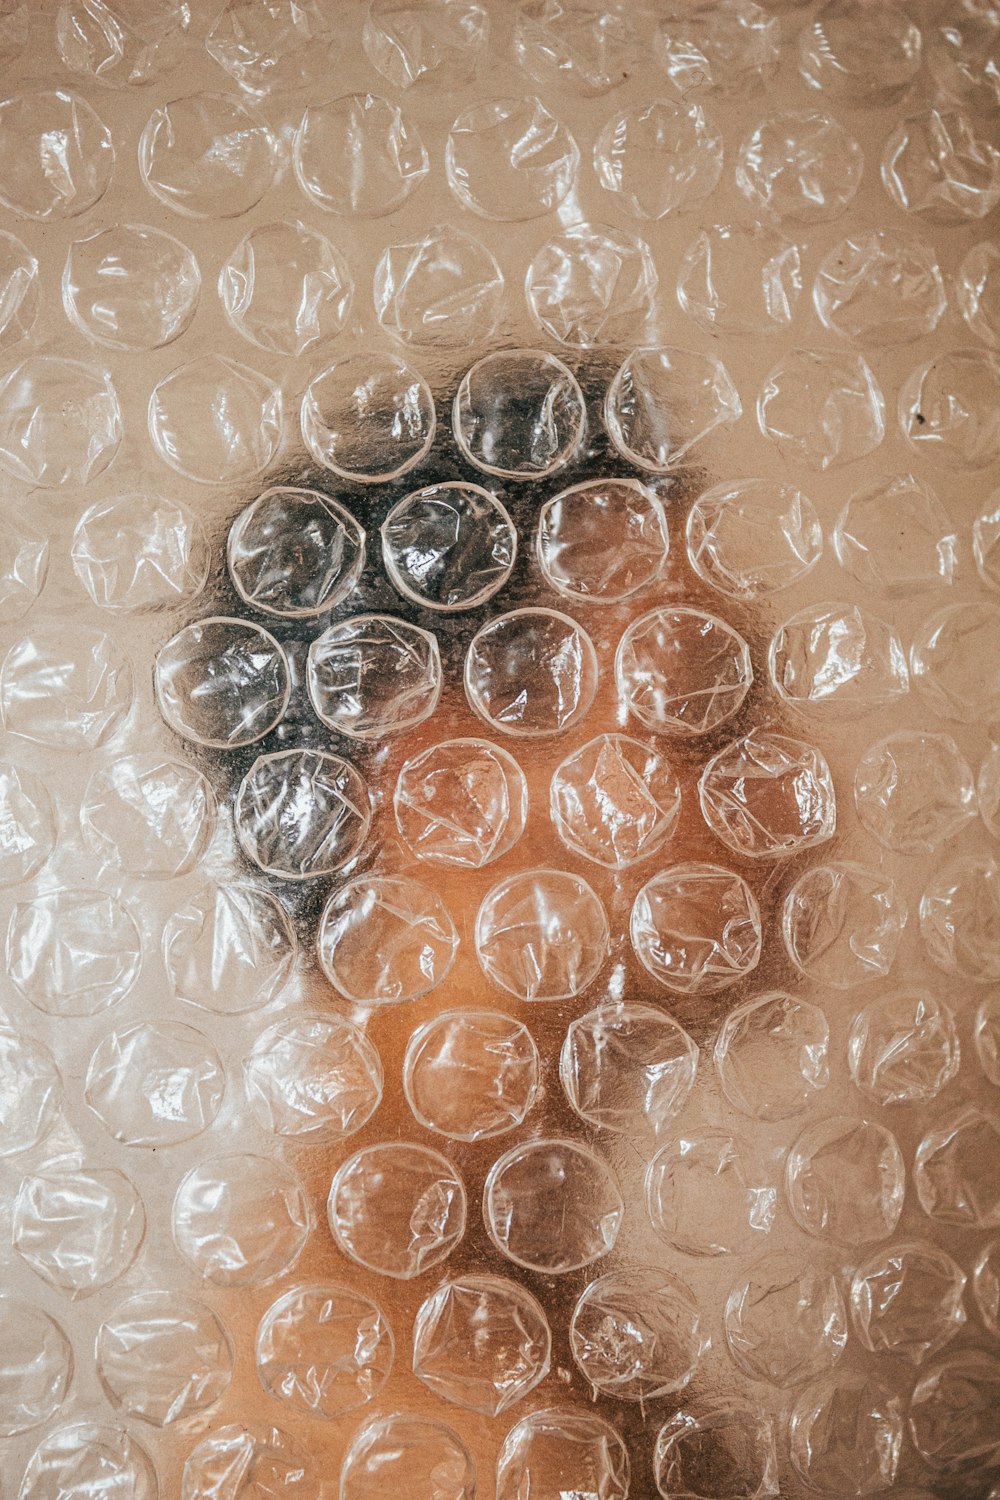 a close up of a person's face through a bubble wrap